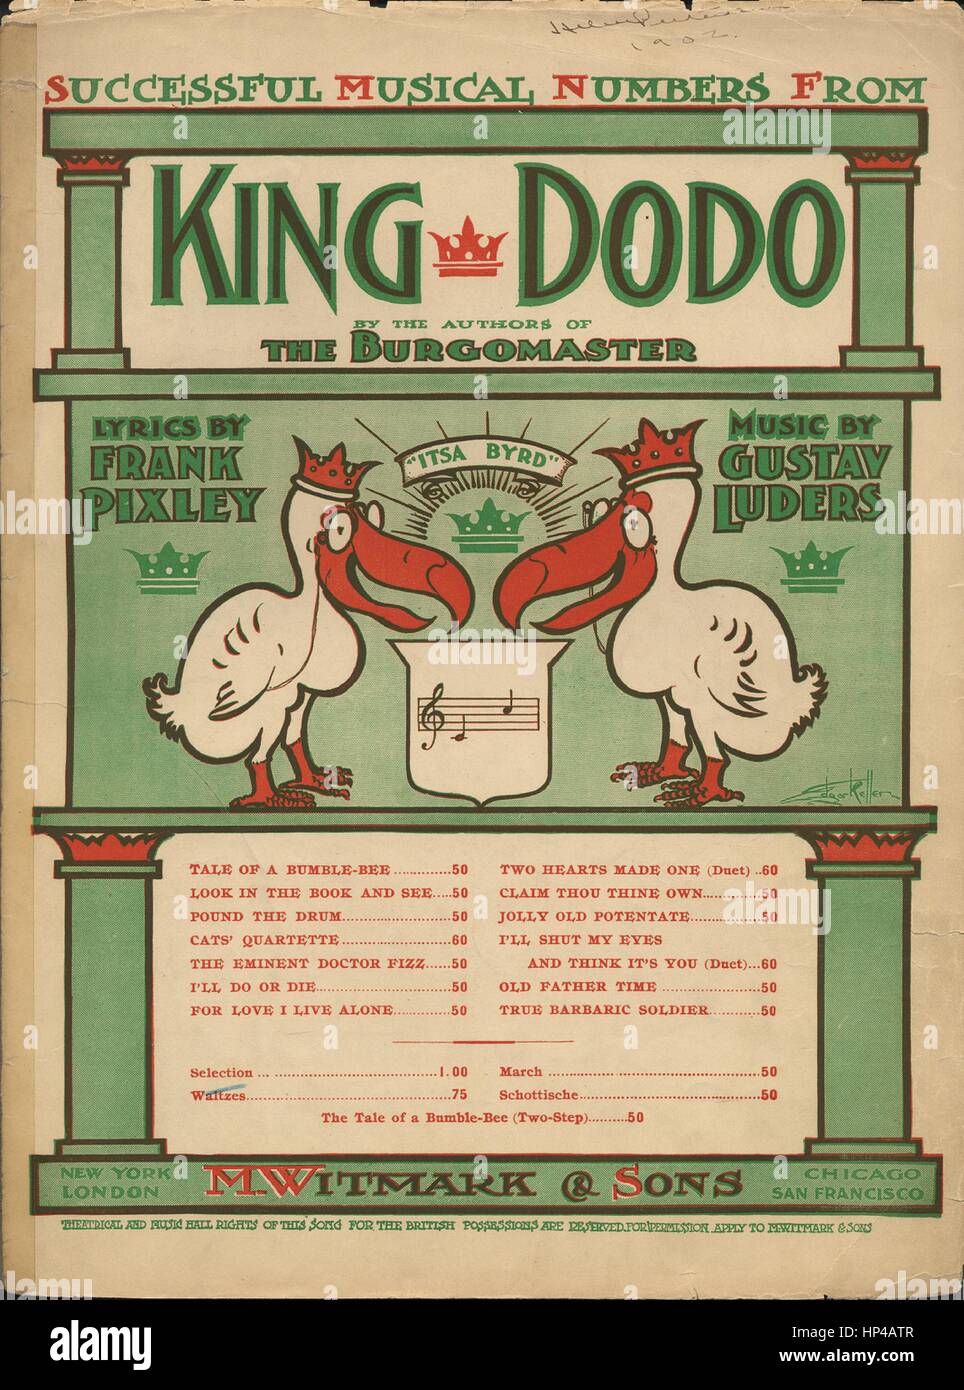 Image de couverture partitions de la chanson 'Selection [sic] de Pixley et Luders' de la comédie musicale 'Le Roi Dodo'', avec l'auteur original "Lecture notes de Gustav Luders Arr par Hilding Anderson', United States, 1901. L'éditeur est répertorié comme 'M. Witmark et fils', la forme de composition est 'sectional', l'instrumentation est 'piano', la première ligne se lit 'Aucun', et l'illustration artiste est répertorié comme 'Edgar Keller'. Banque D'Images